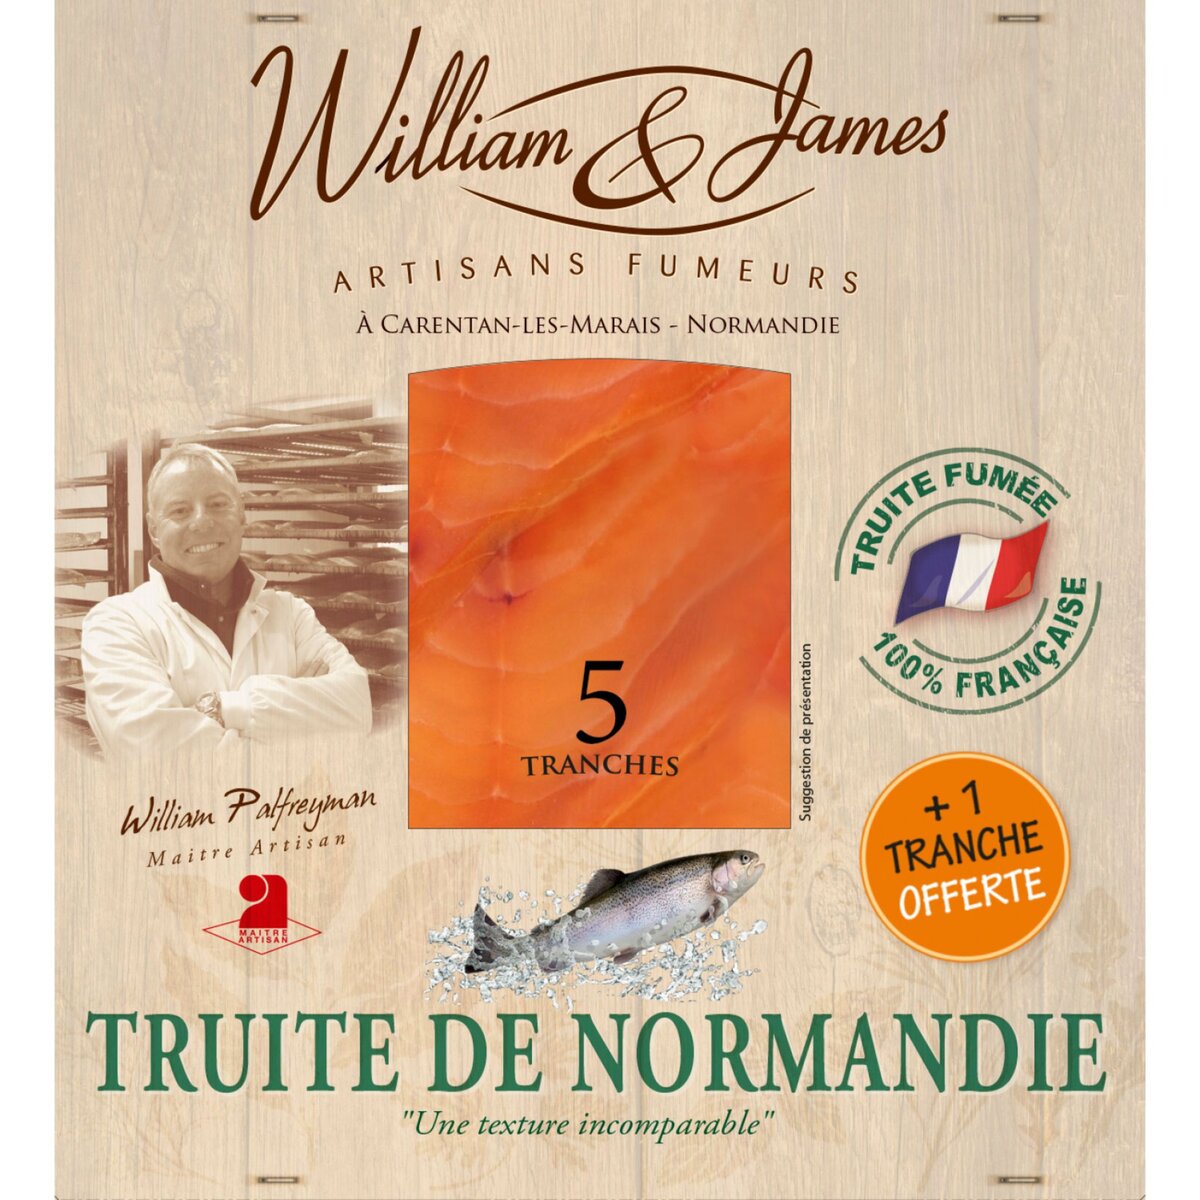 WILLIAM & JAMES Truite fumée de Normandie 5 tranches +1 offerte 150g